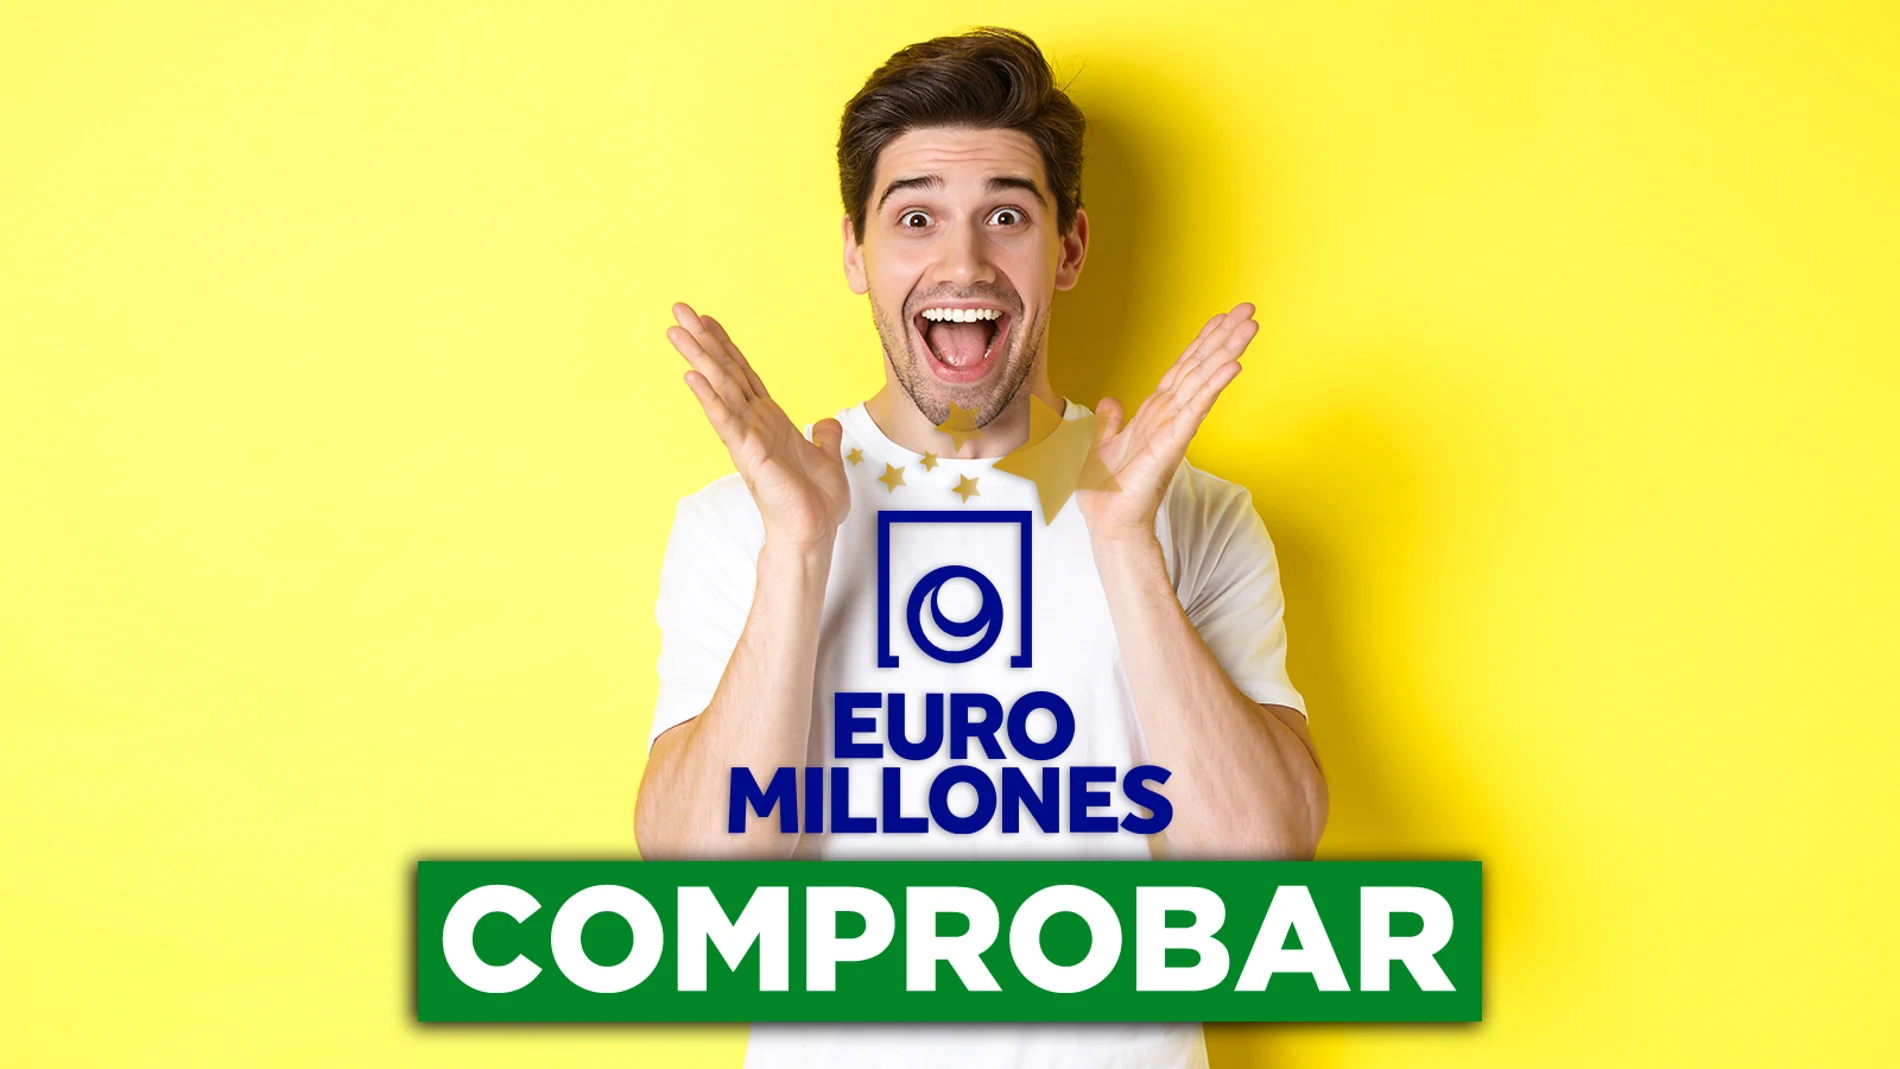 Euromillones, hoy: Comprobar resultados del sorteo del martes 14 de junio